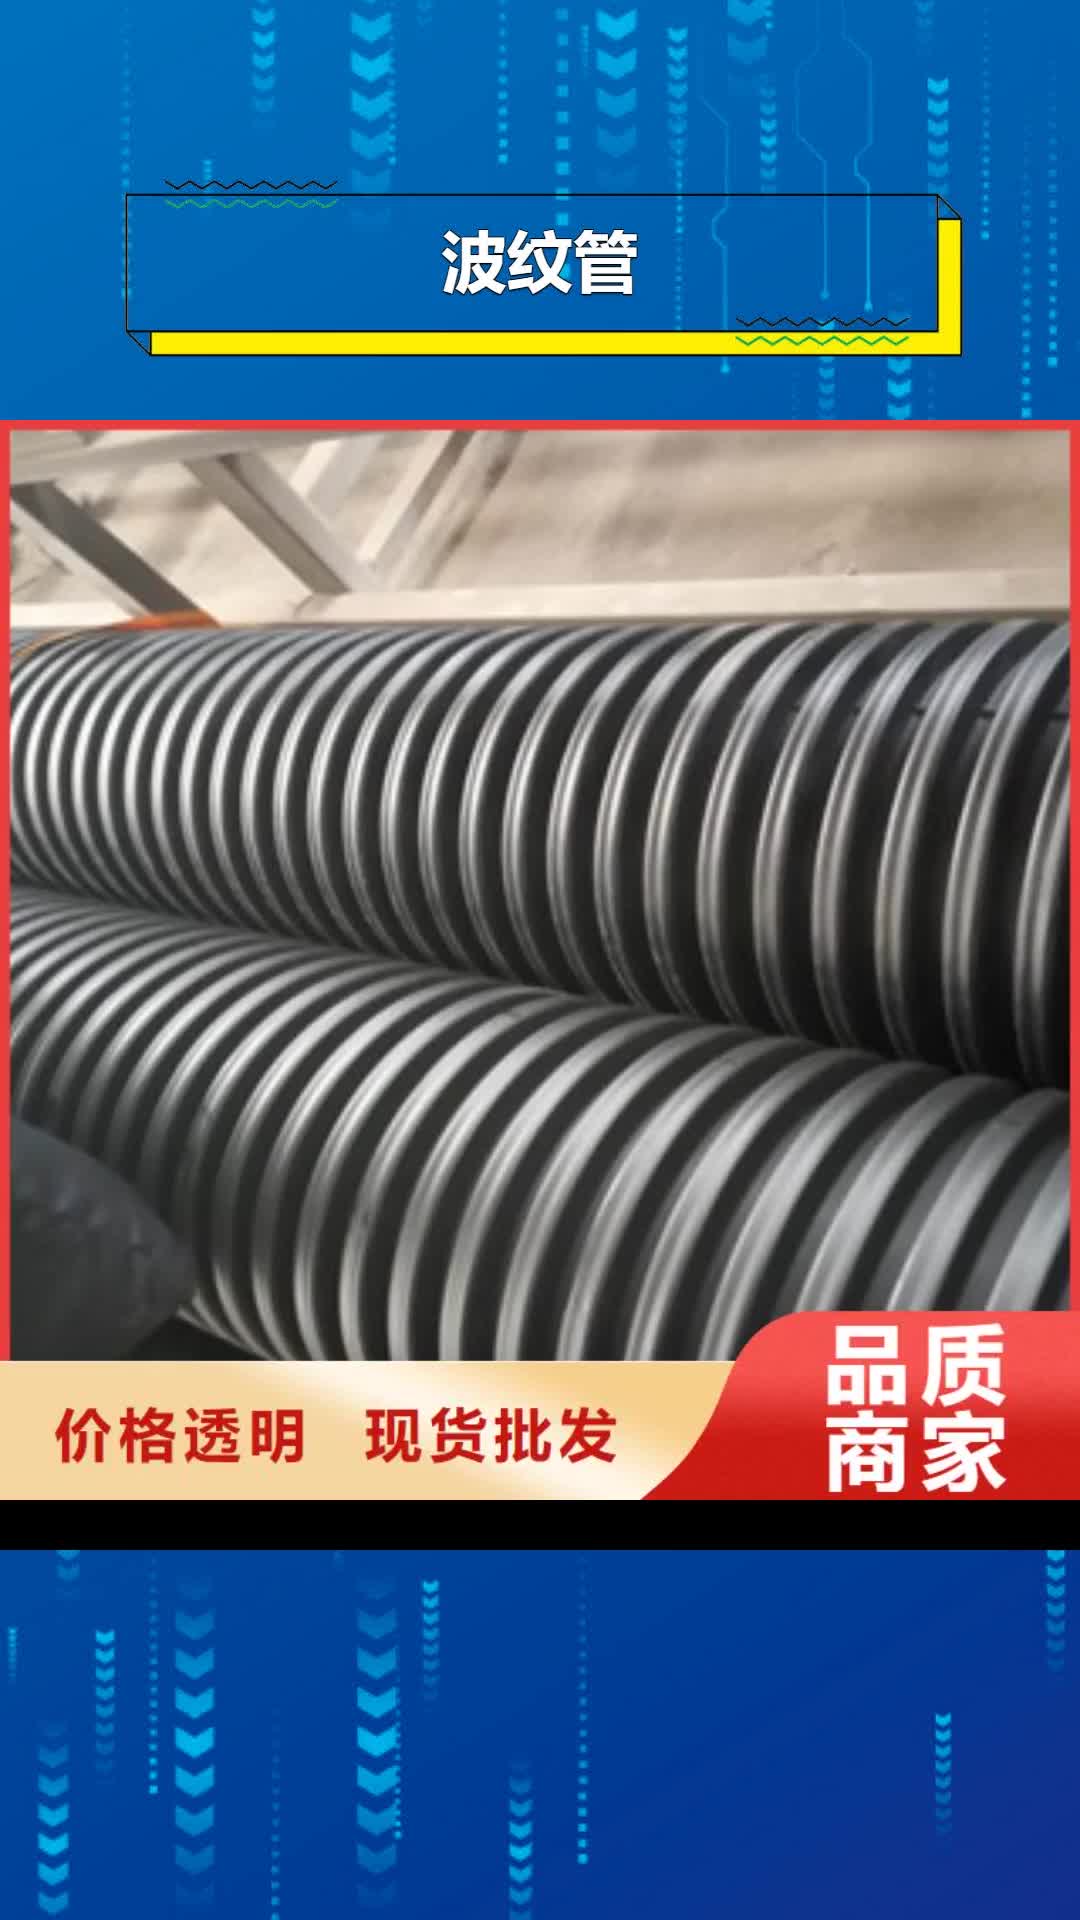 郑州【波纹管】,钢丝网骨架复合管优选好材铸造好品质